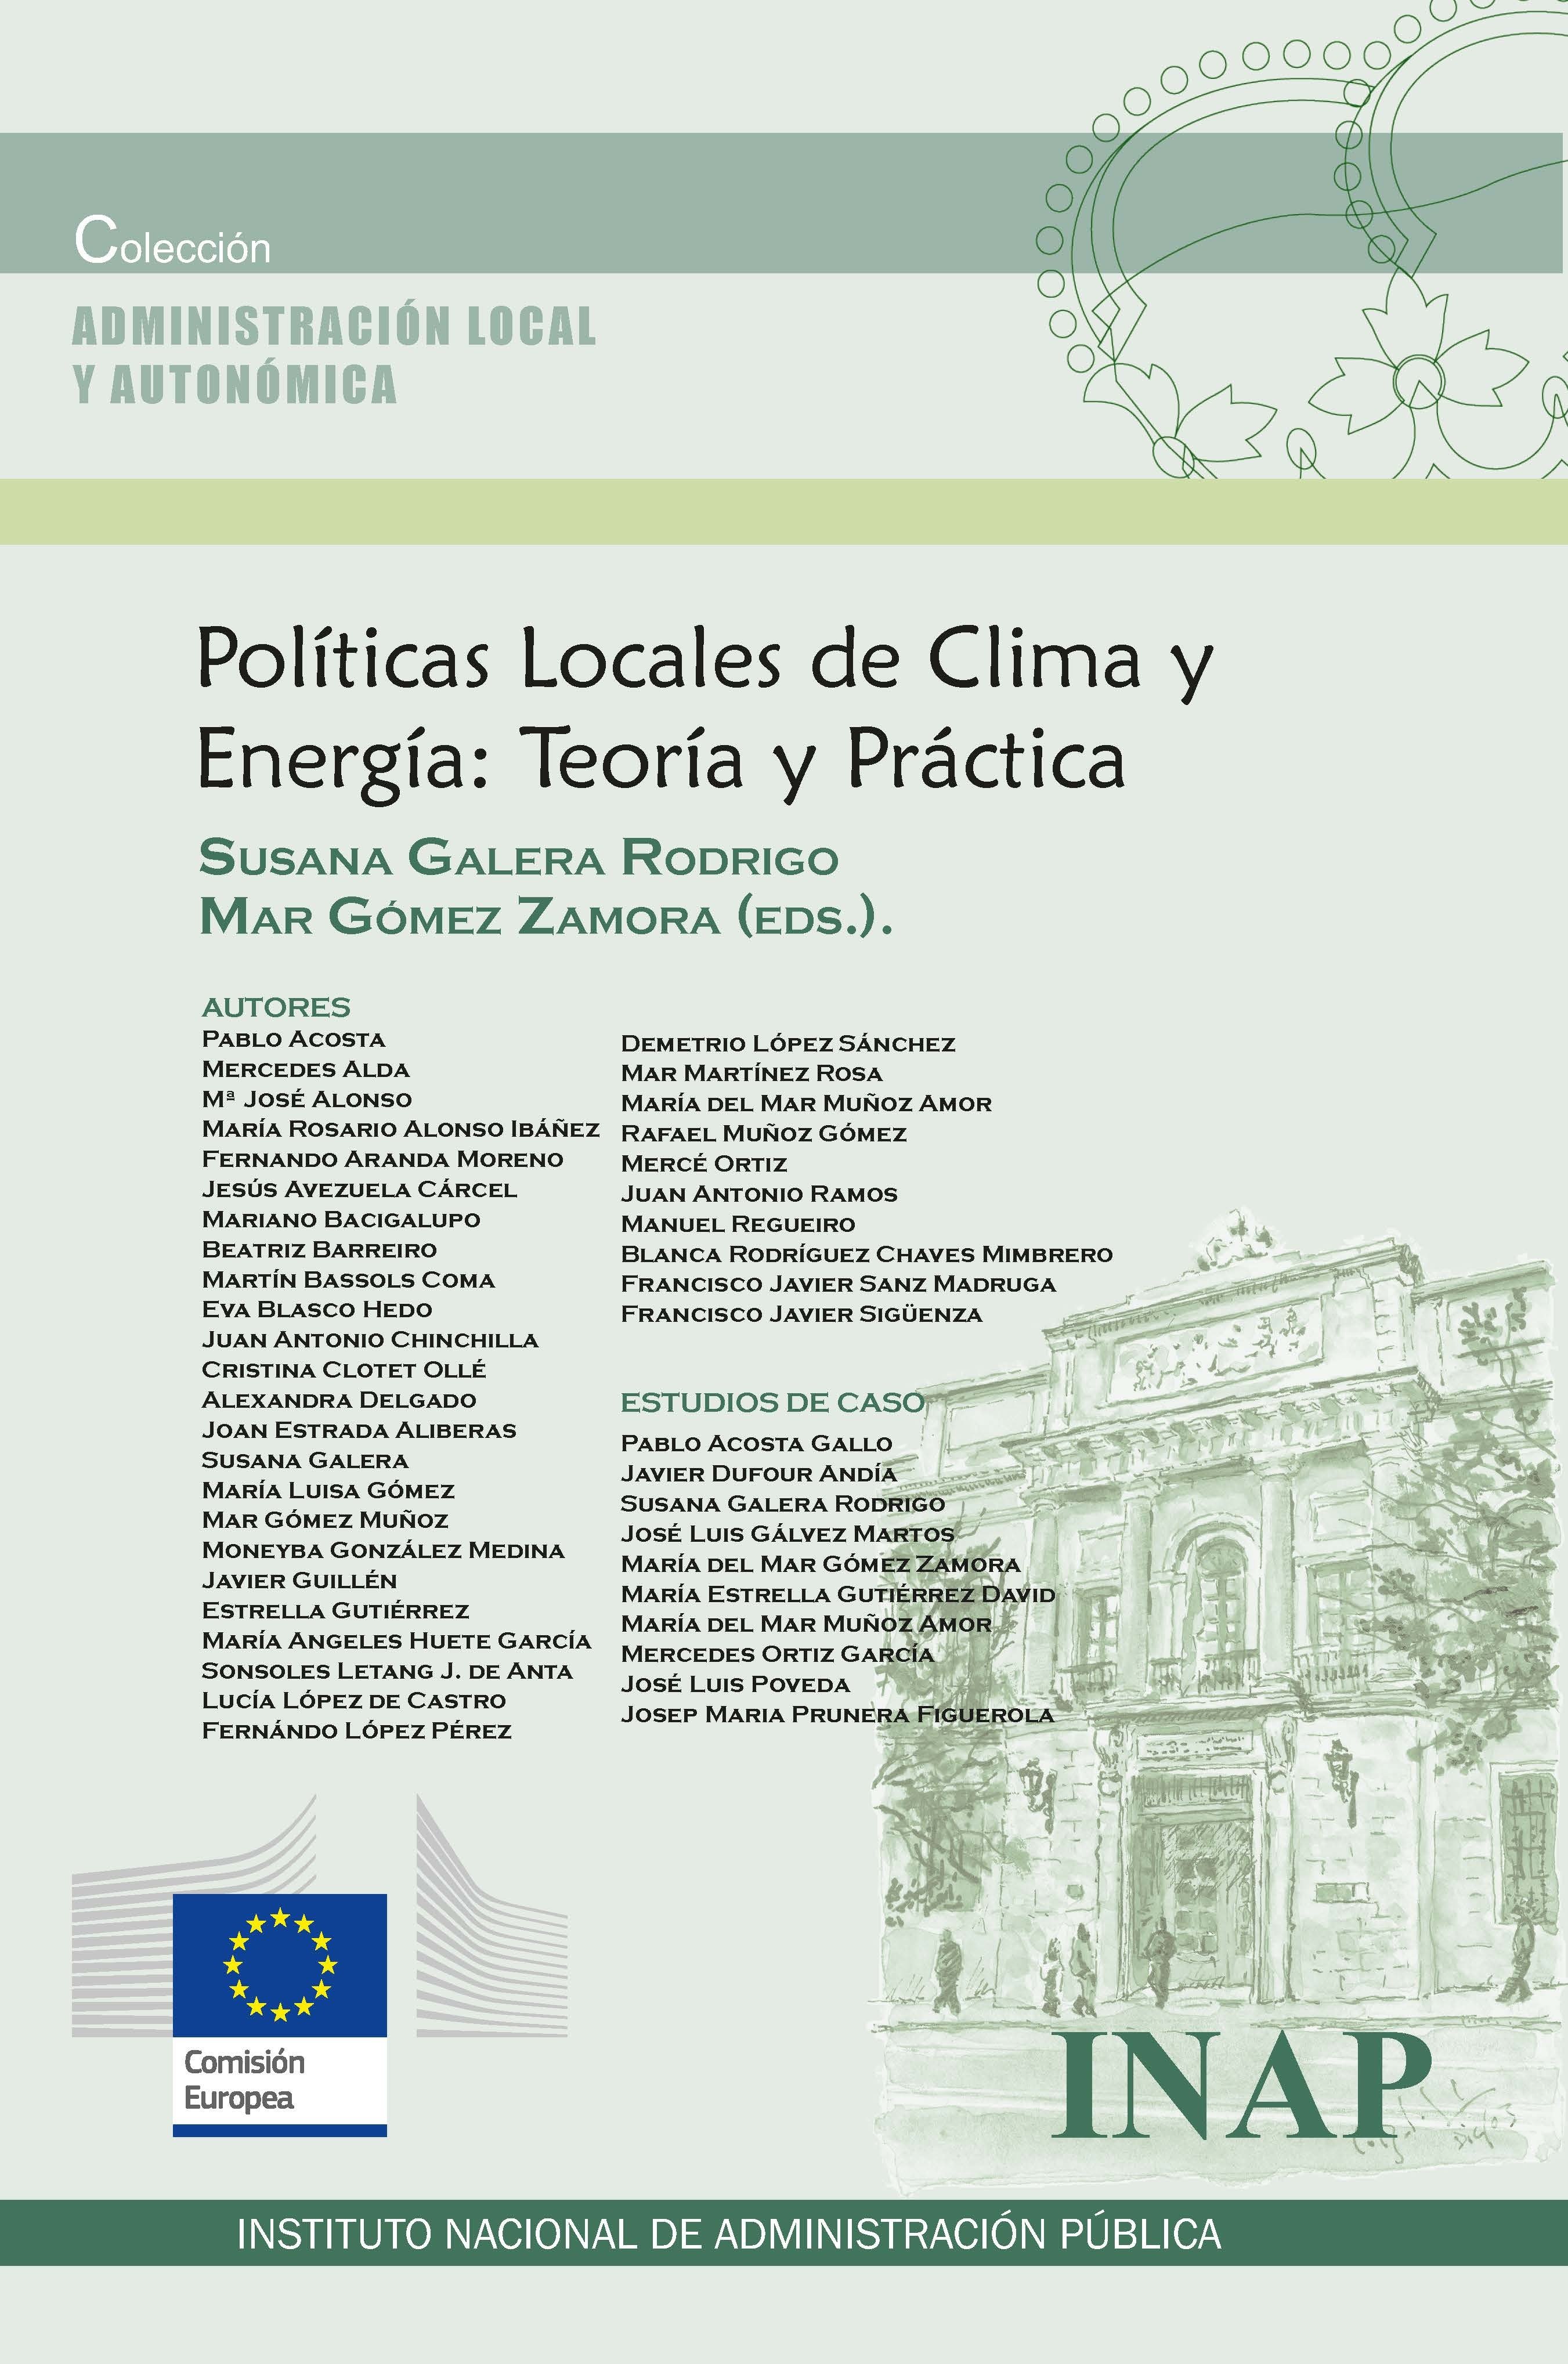 Politicas Locales de Clima y Energía: Teoría y Práctica